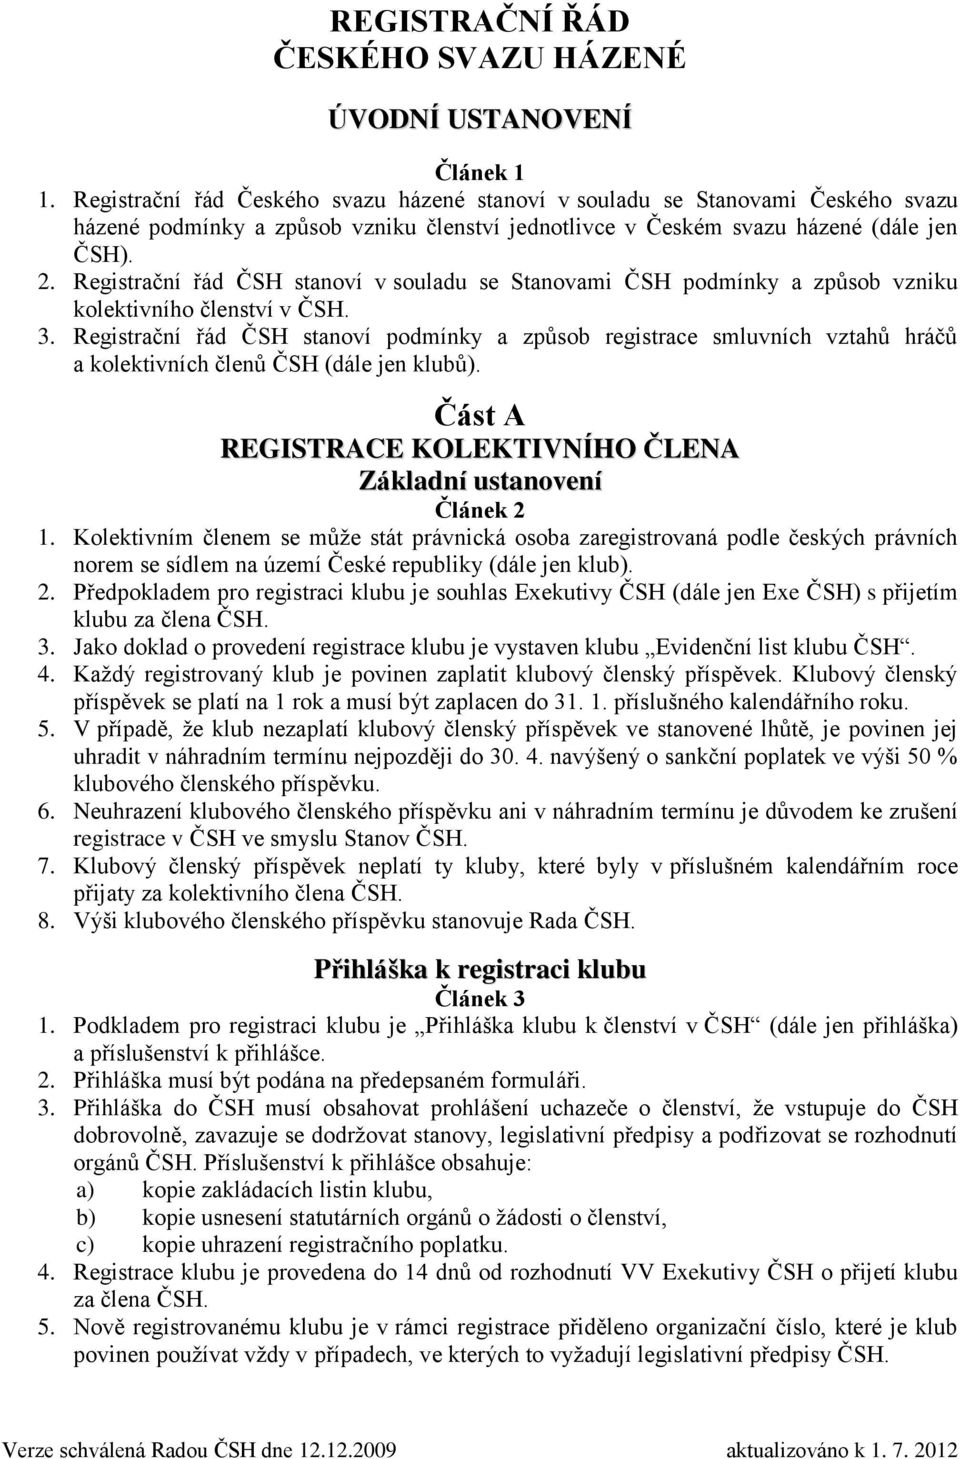 Registrační řád ČSH stanoví v souladu se Stanovami ČSH podmínky a způsob vzniku kolektivního členství v ČSH. 3.